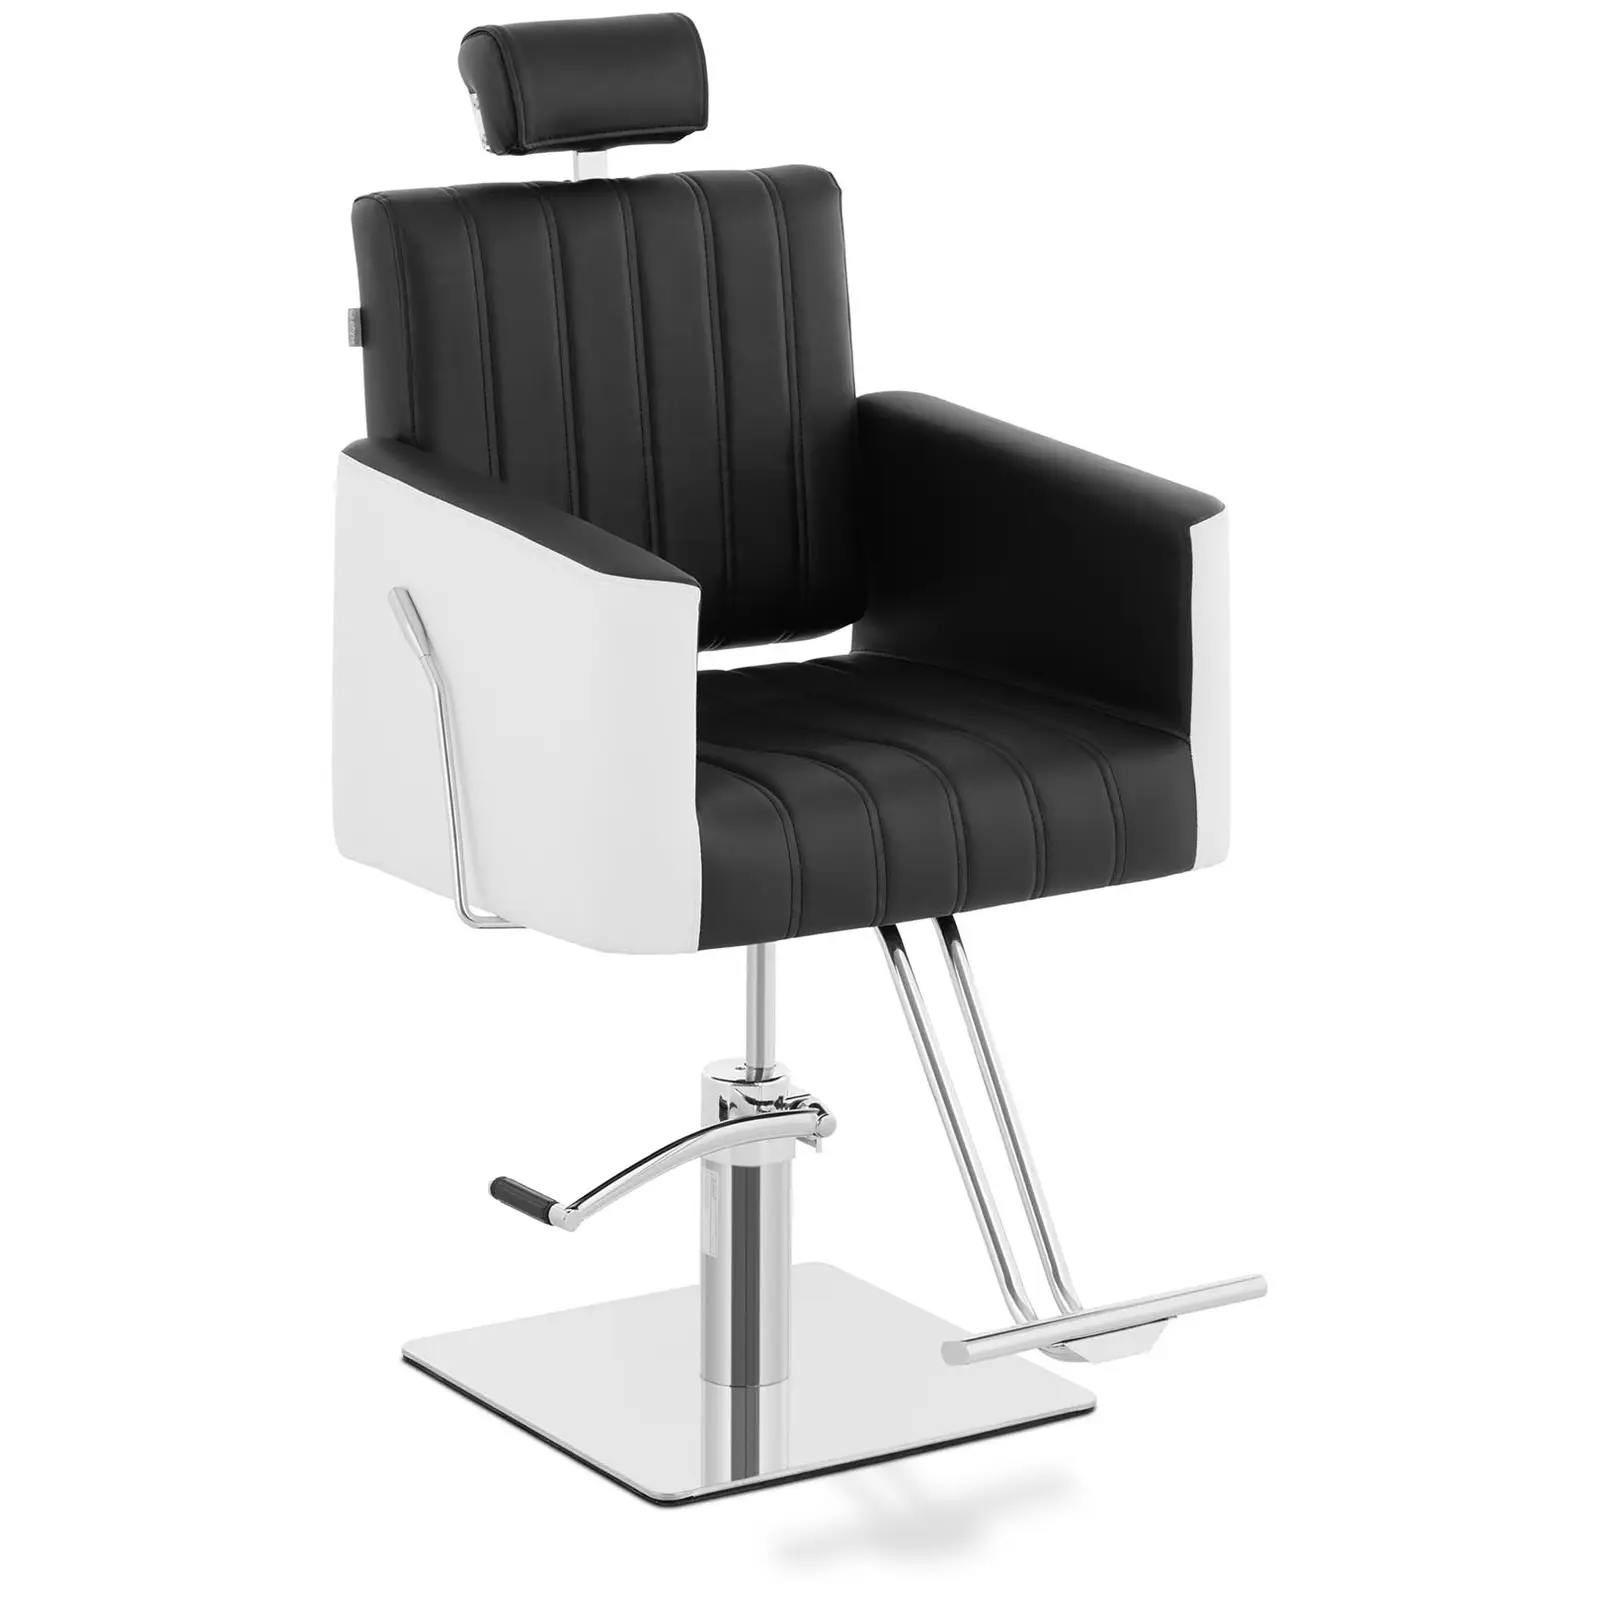 Scaun de salon cu suport pentru picioare - 470 x 630 mm - 150 kg - Black, White}